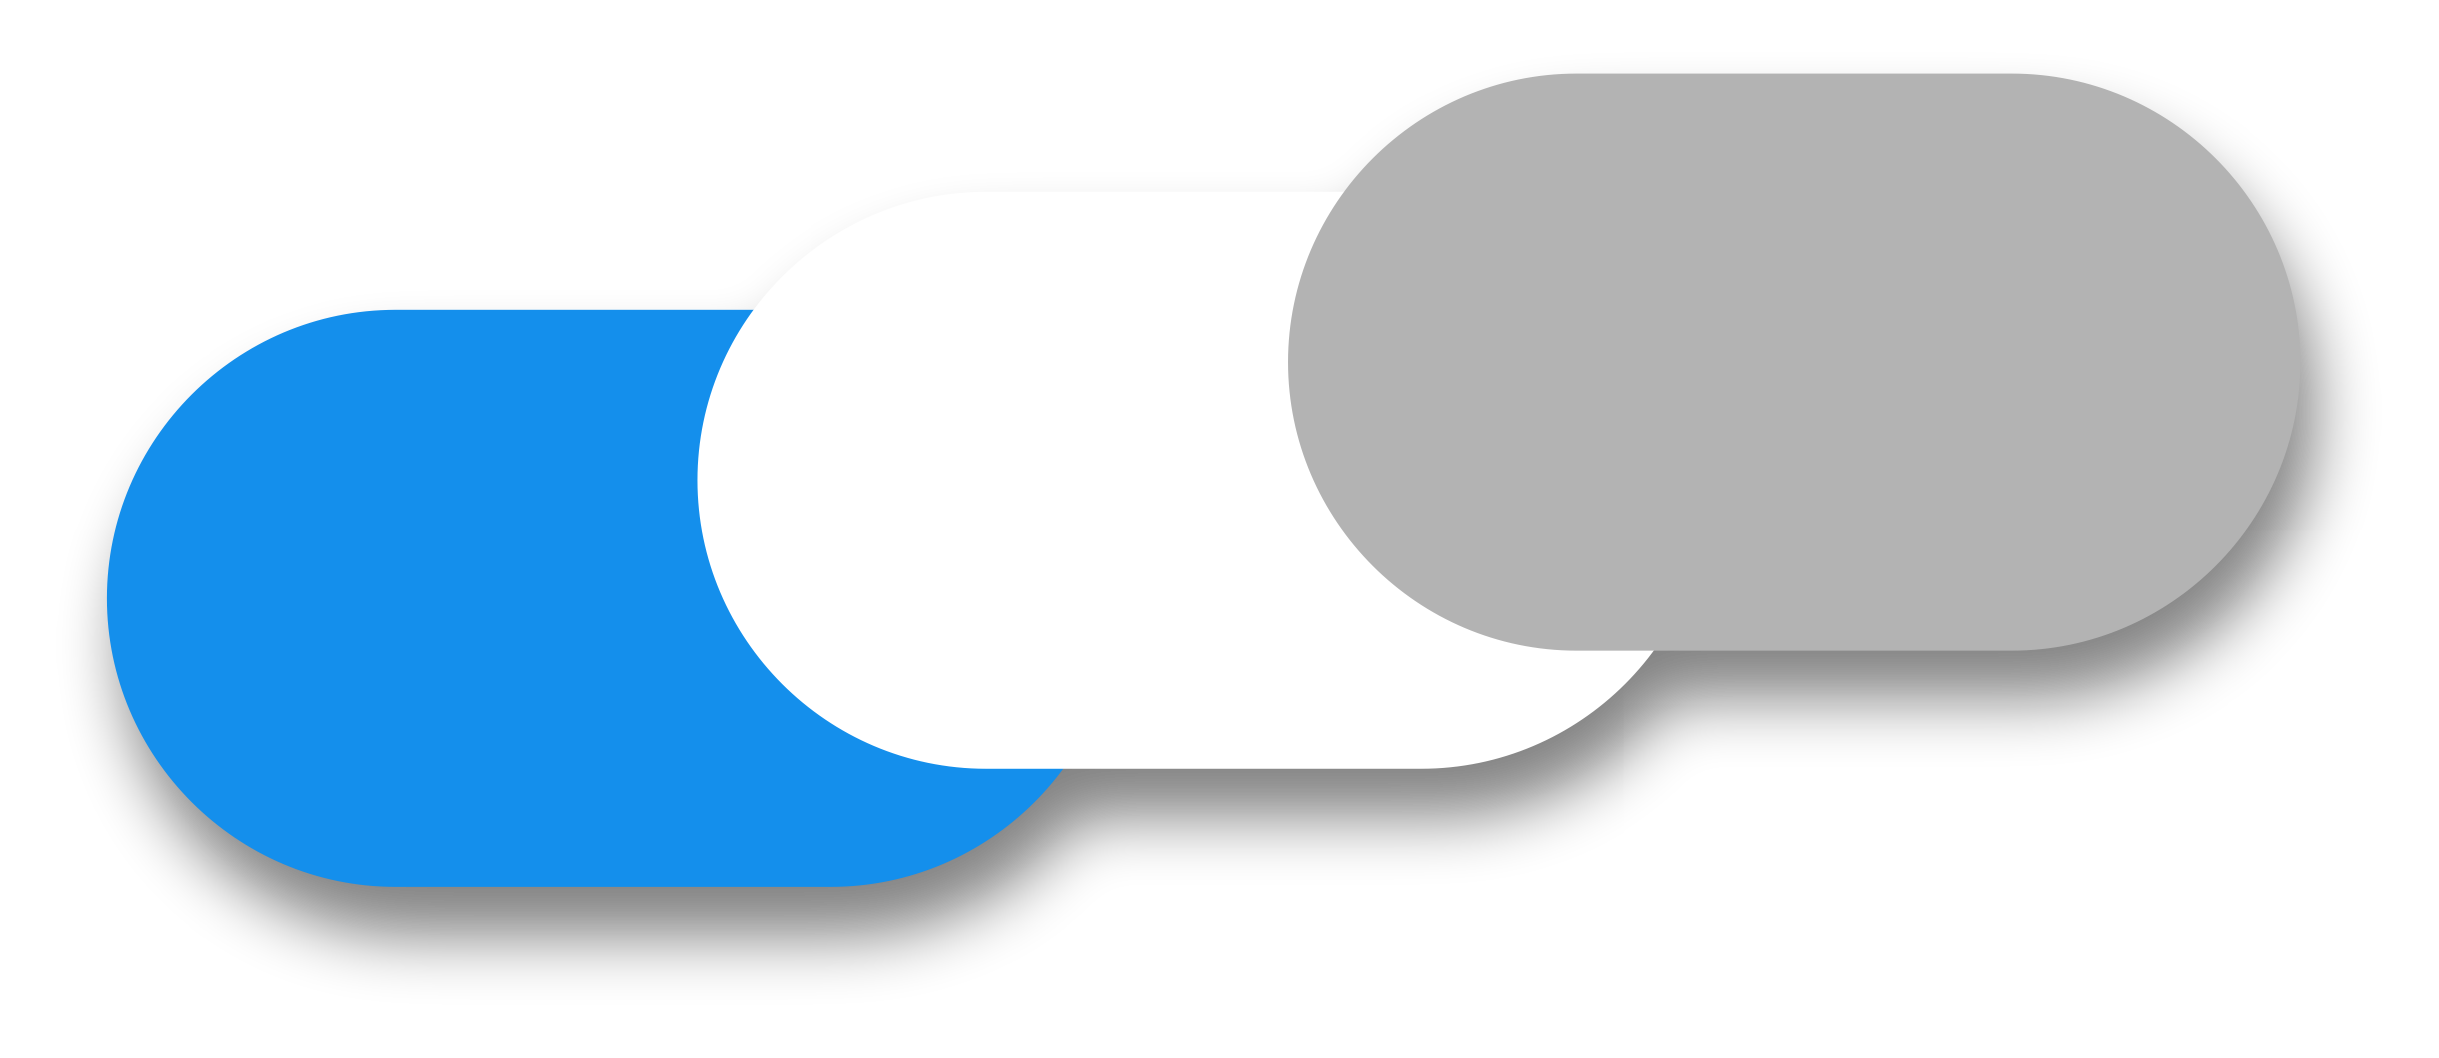 Farebné variácie oválnych bazénov - biela, modrá a sivá